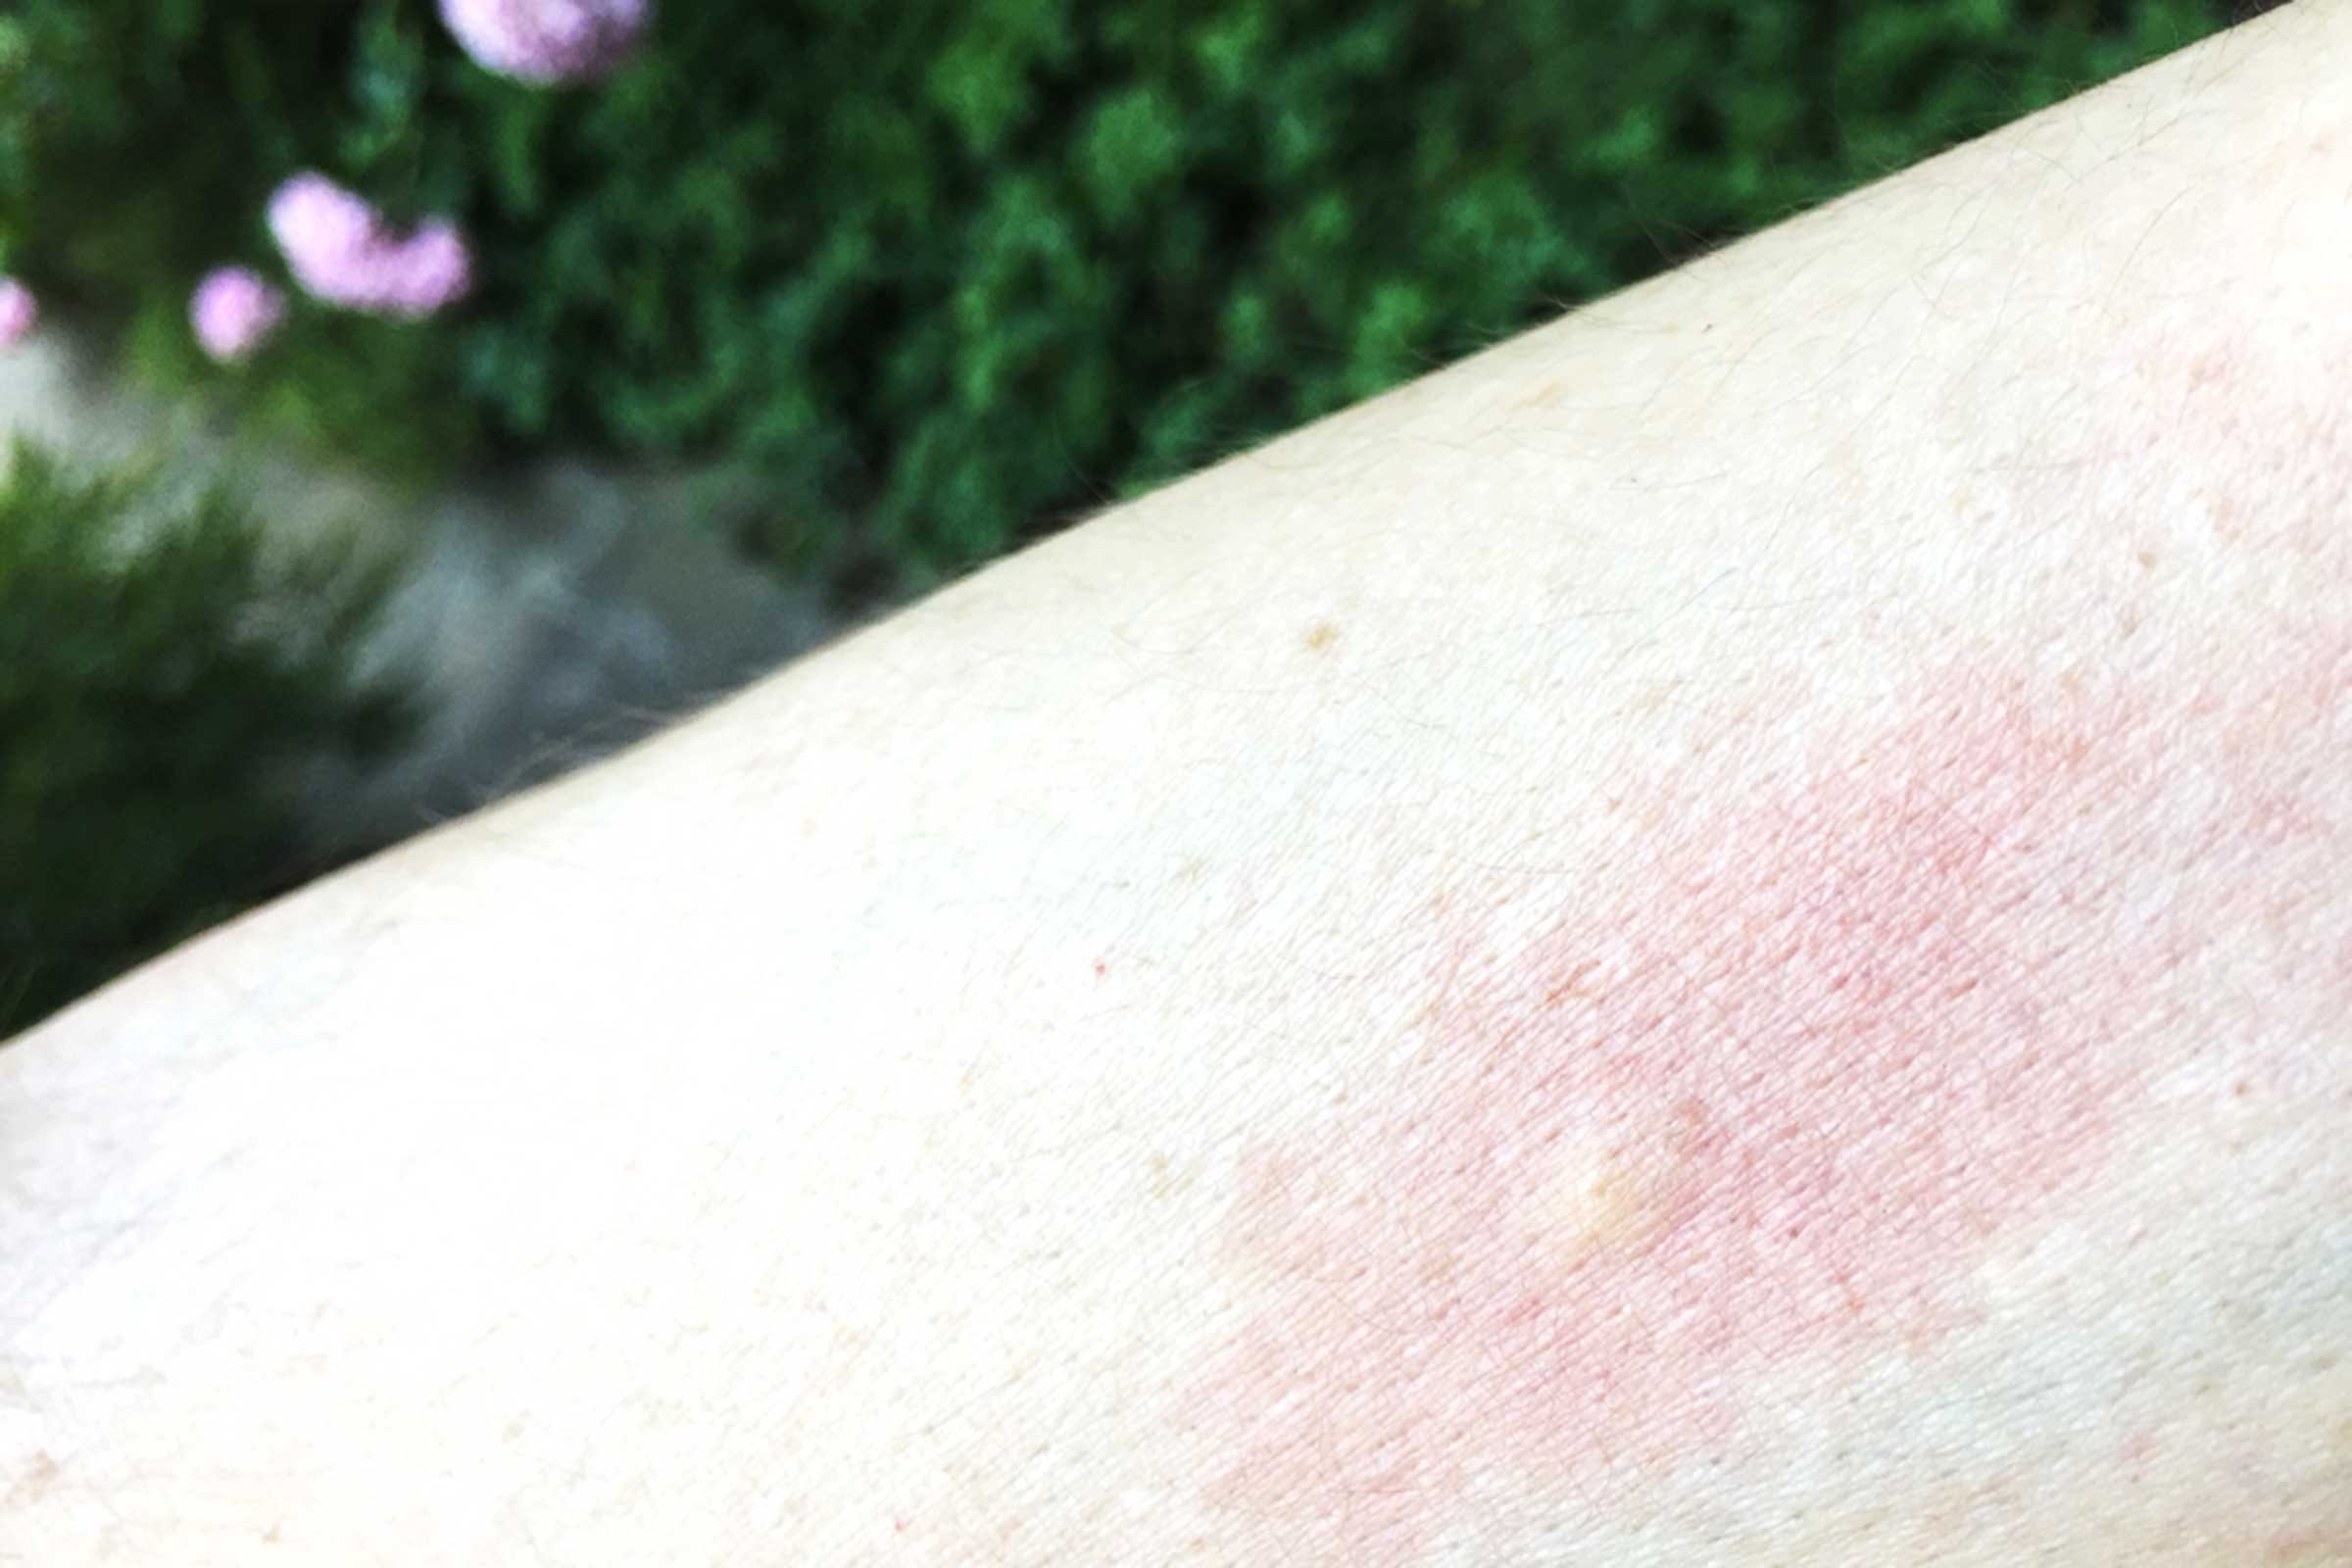 how to identify mosquito bites